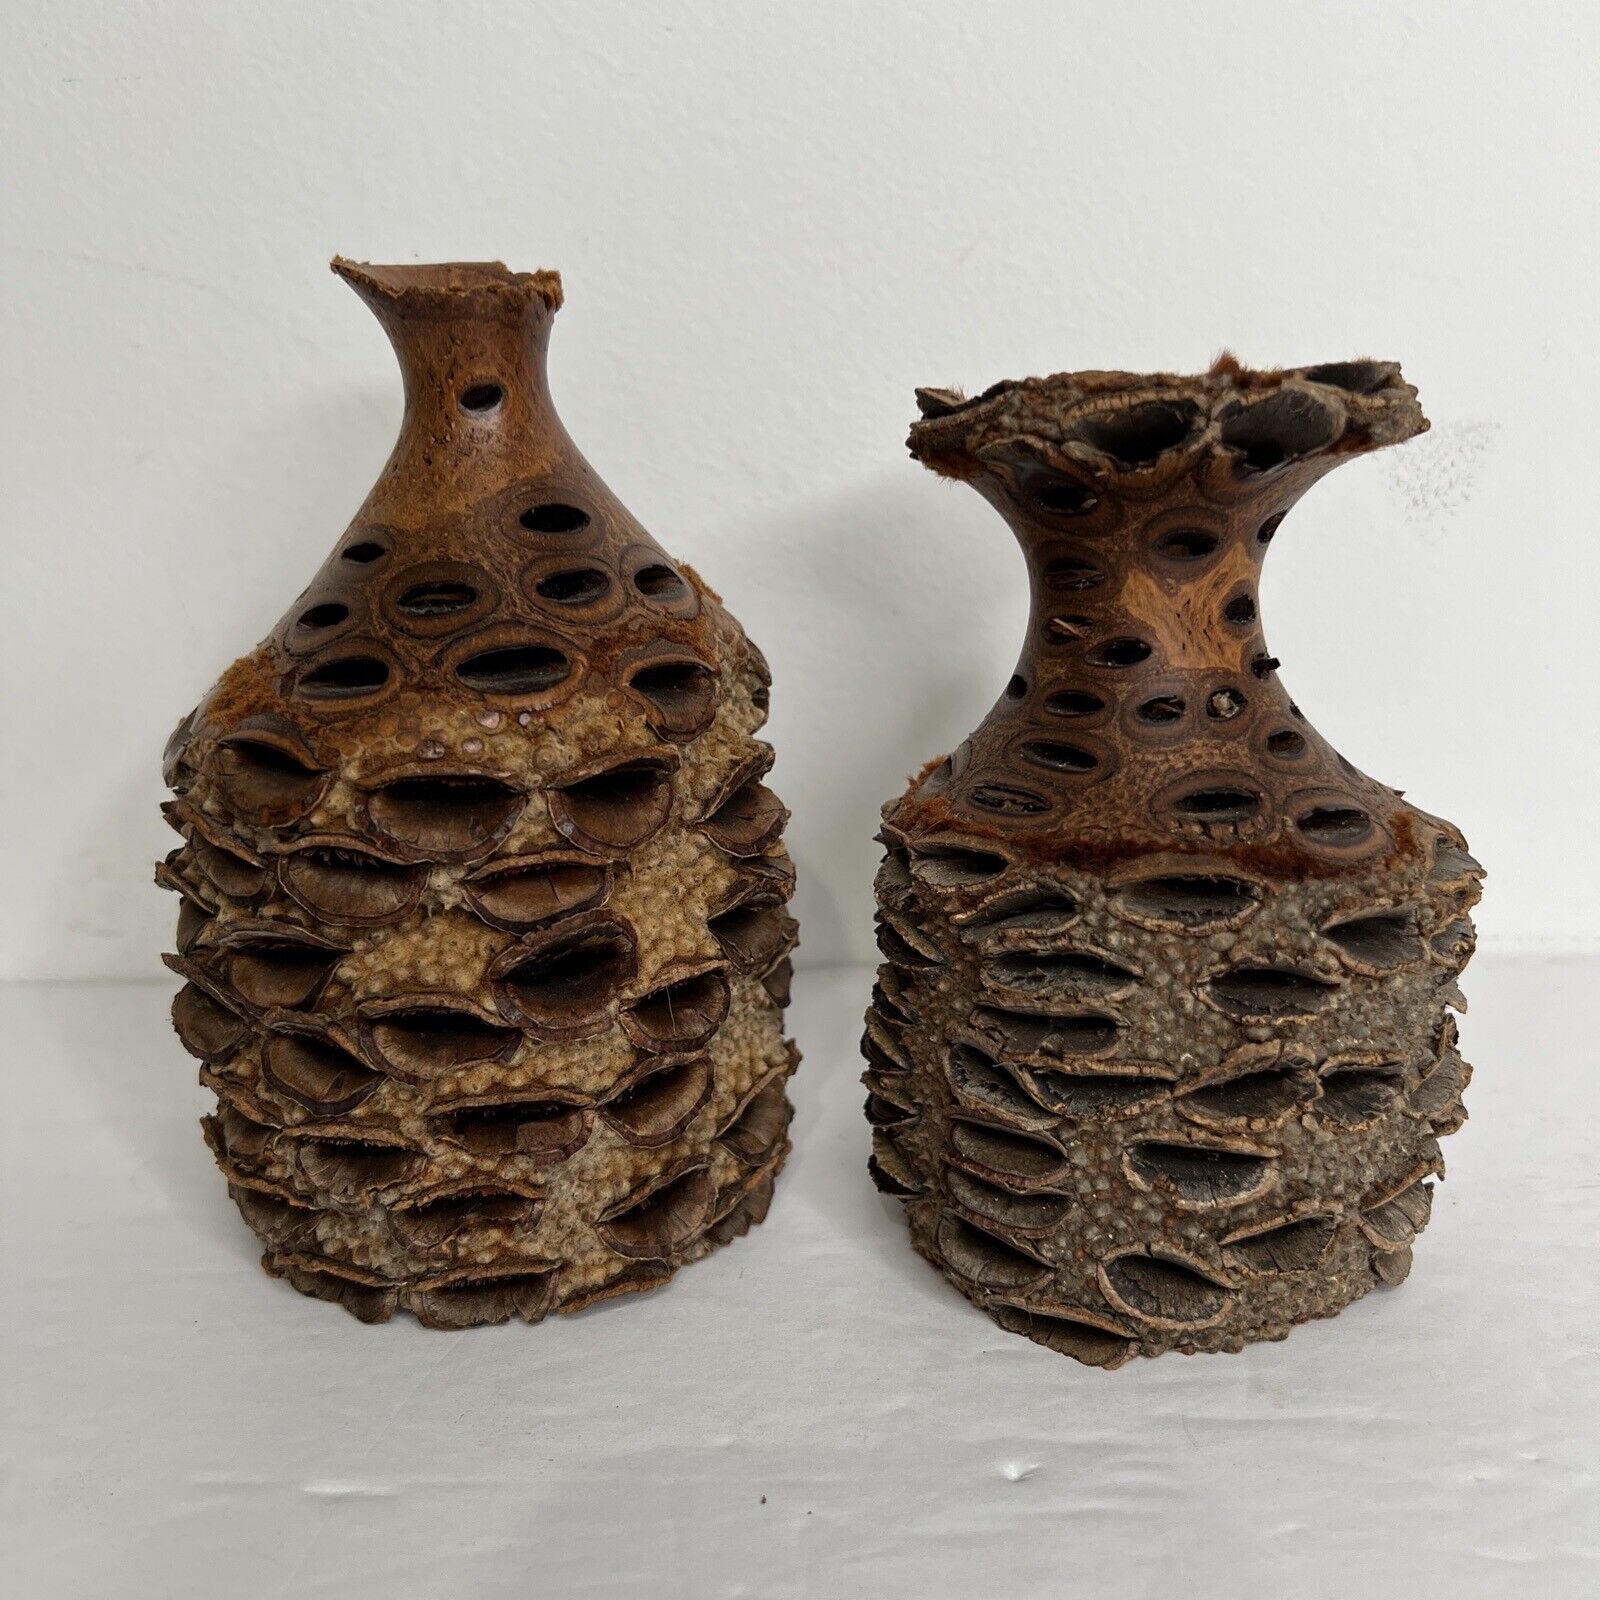 2 Turned Banksia Vase Seed Pod Wood Art Carved Natural Organic Shape Signed